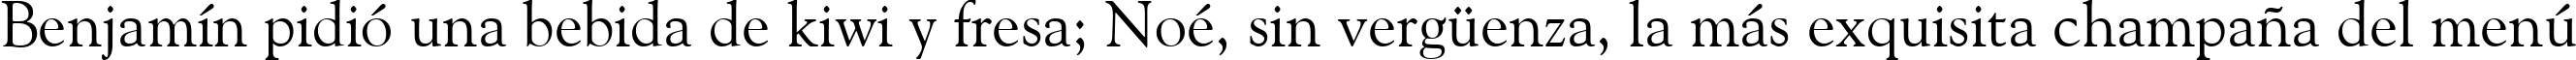 Пример написания шрифтом Goudy Old Style BT текста на испанском